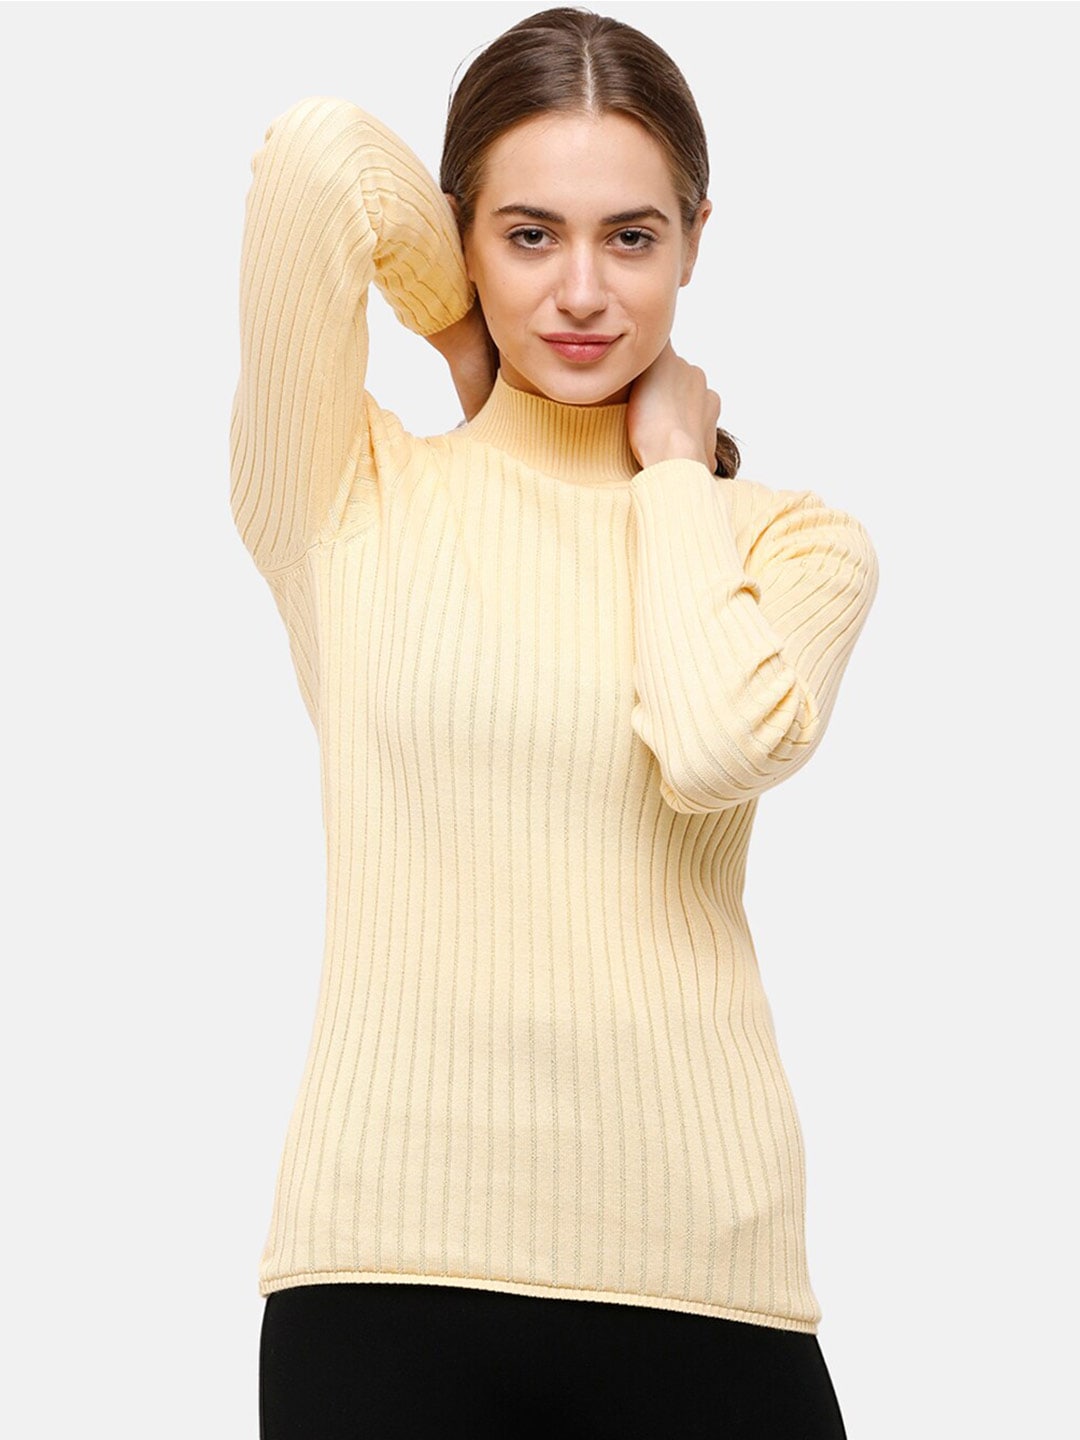 98 Degree North Women Yellow Striped Self Design Pure Cotton Pullover Price in India